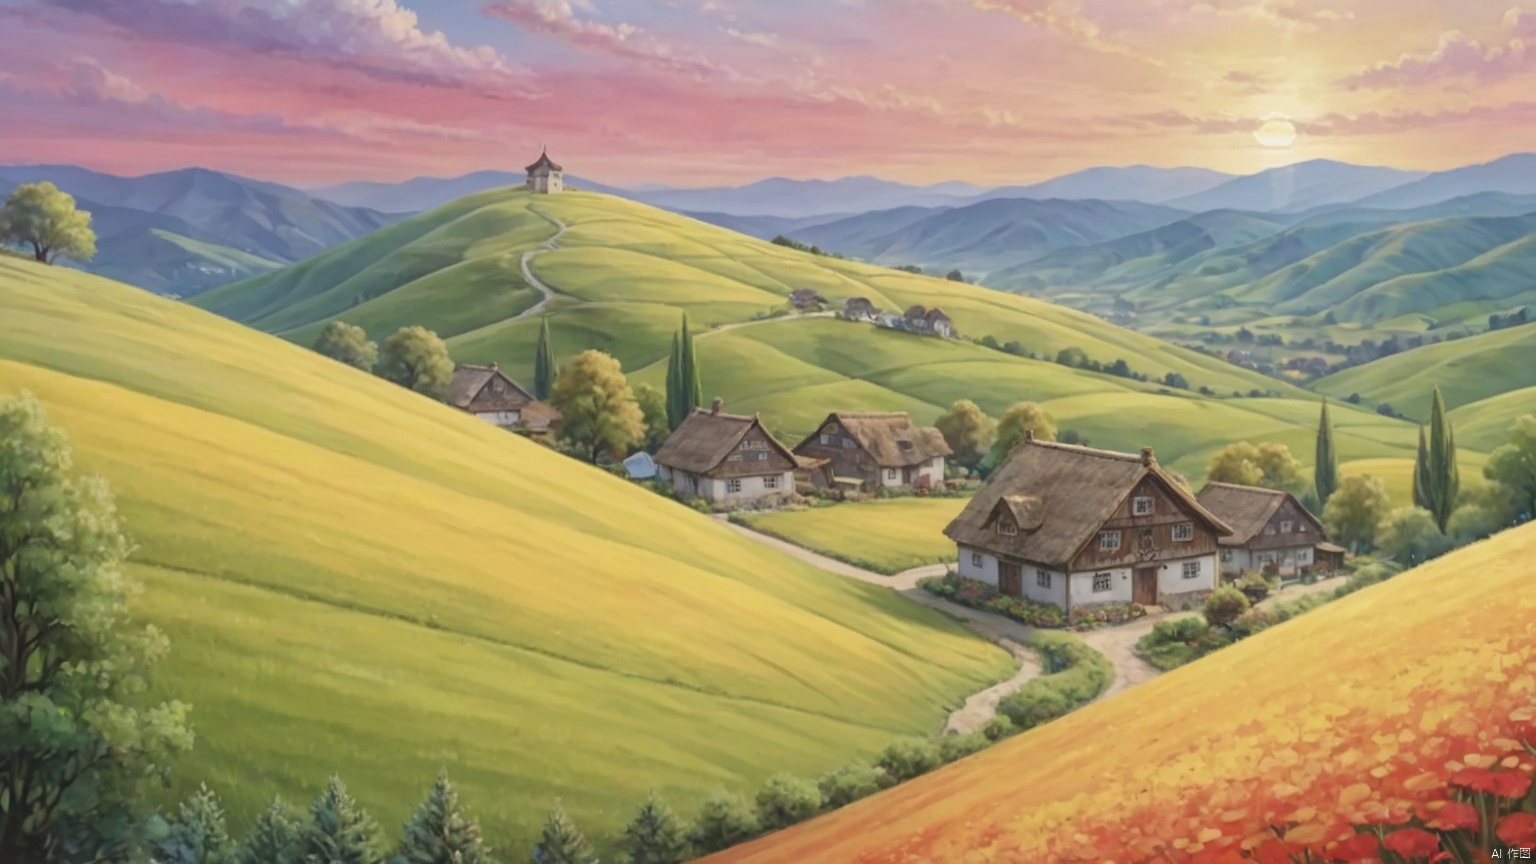 乡村, An idyllic countryside vista with undulating hills and quaint farmhouses, in the style of poster art, hyper-detailed, richly colored skies, colorful, Oil painting,cozyanimationscenes,illustration,雪景